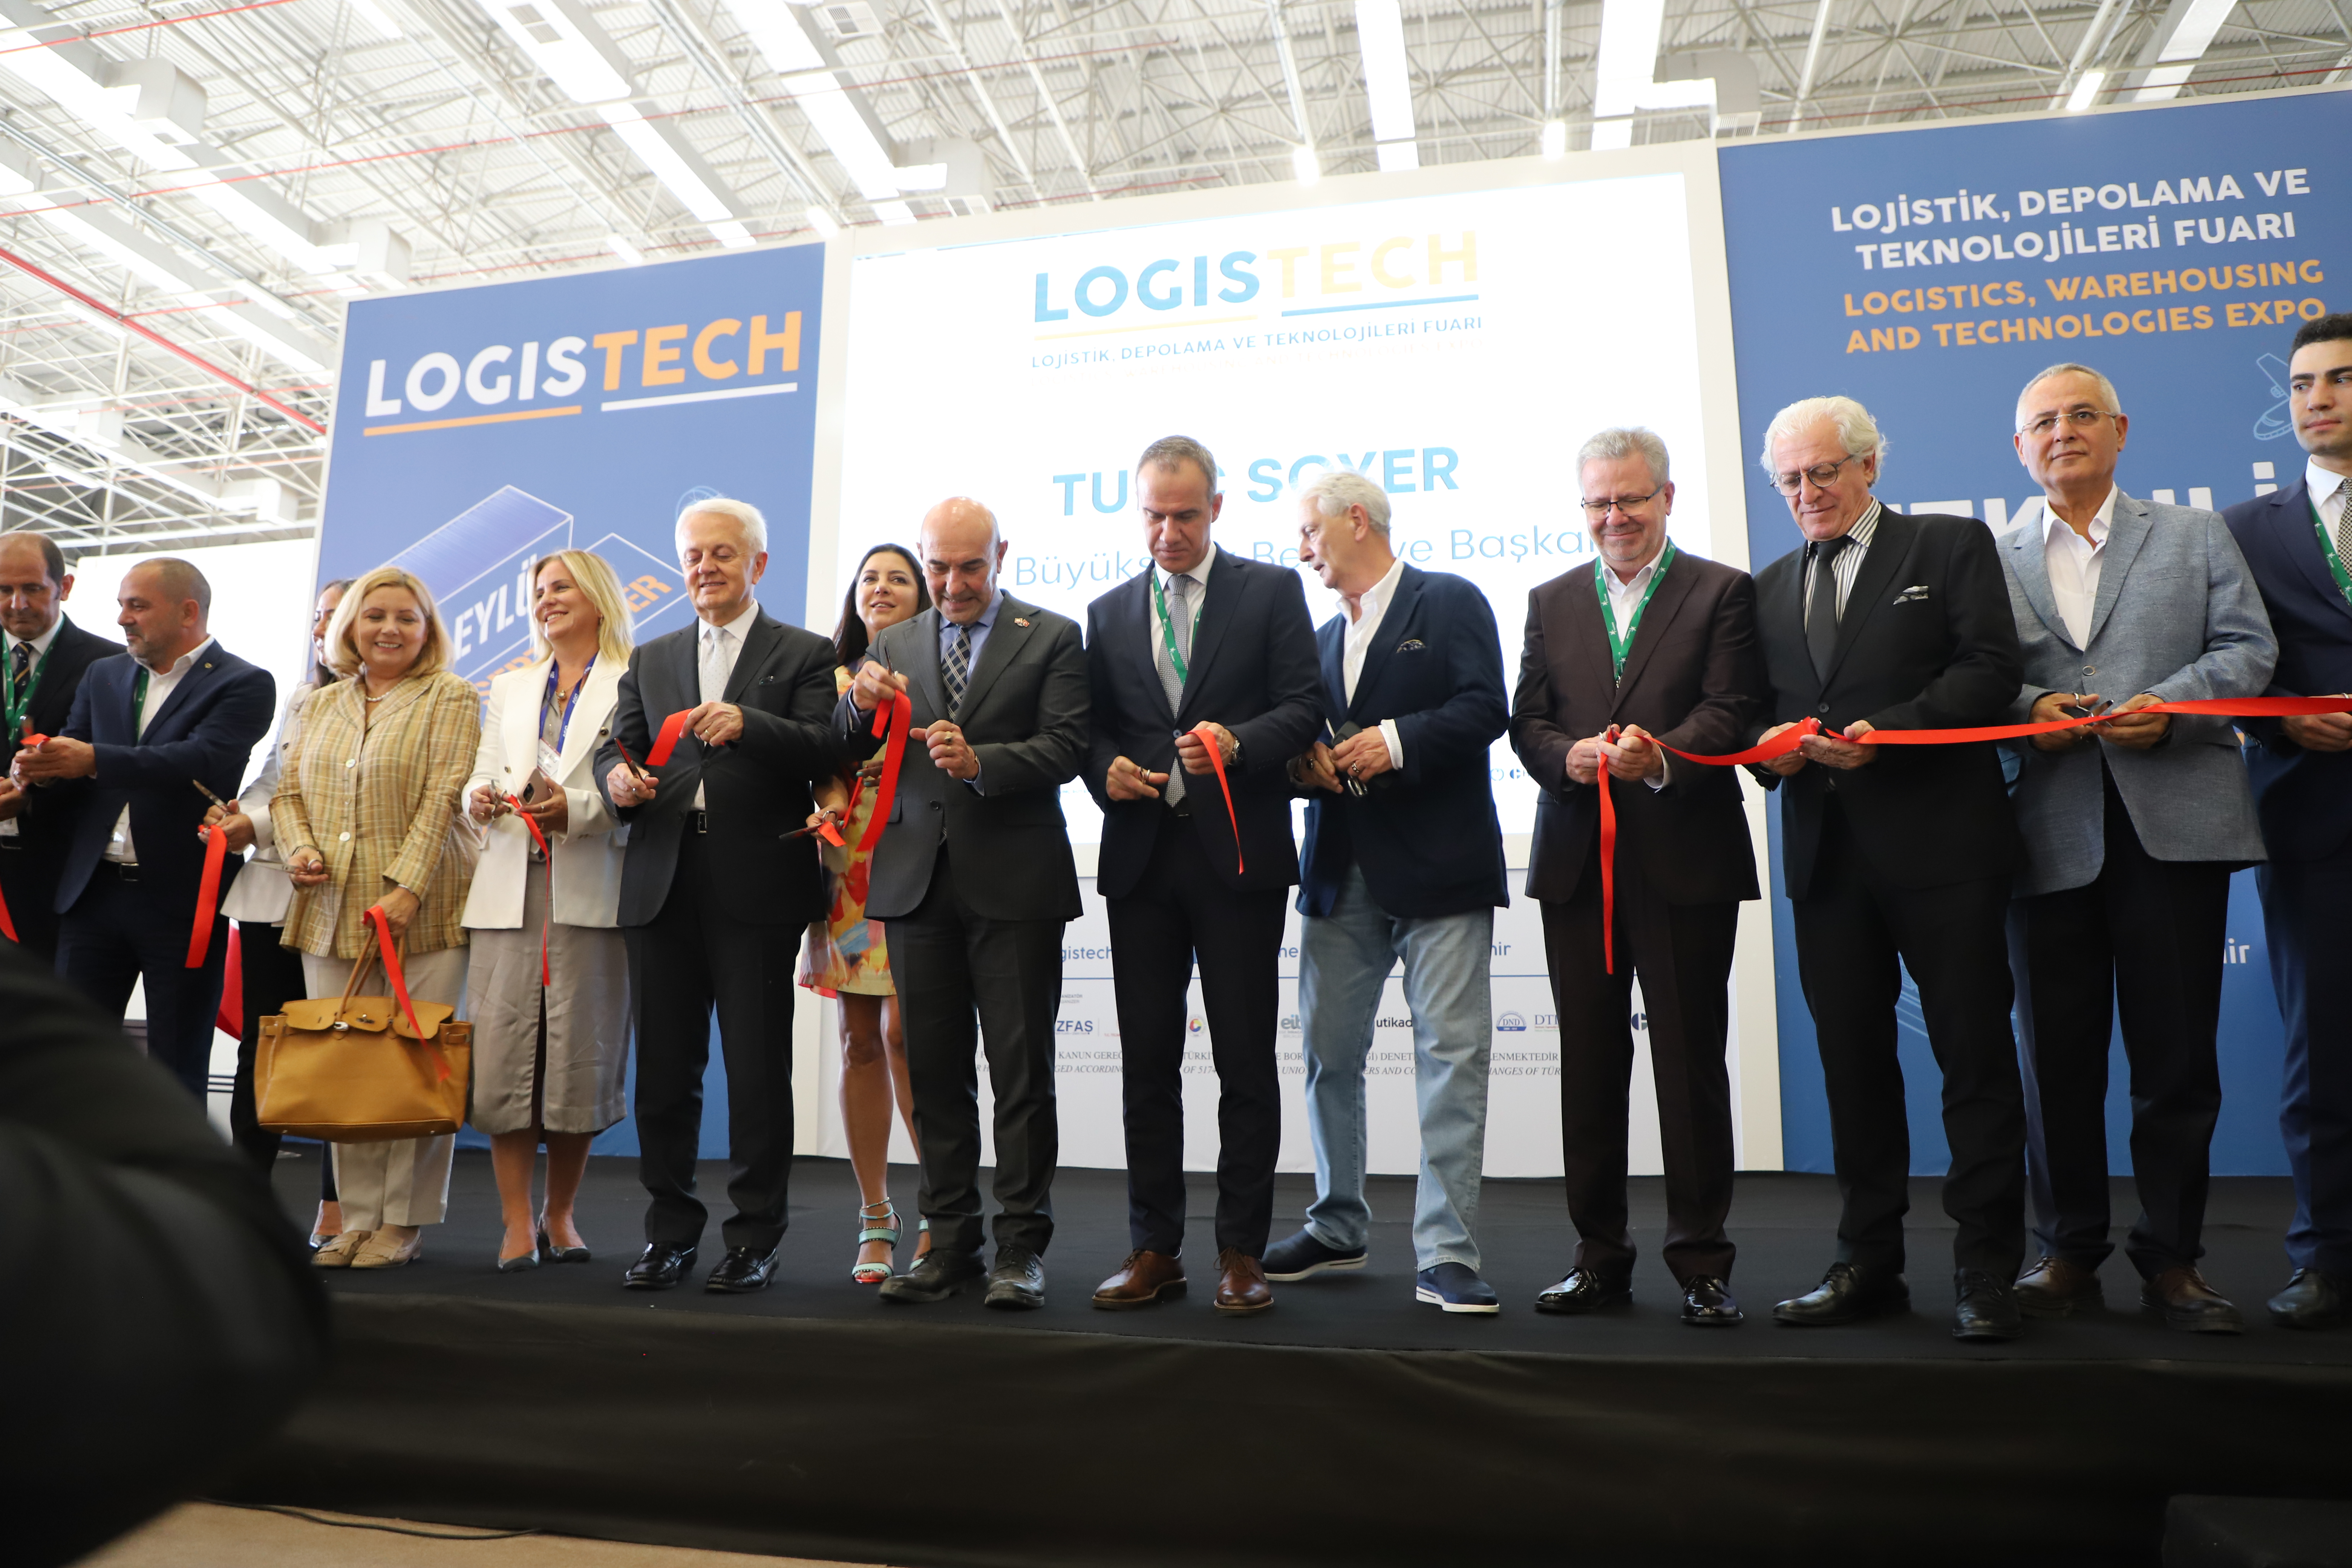 Logistech Lojistik, Depolama ve Teknolojileri Fuarı 2022